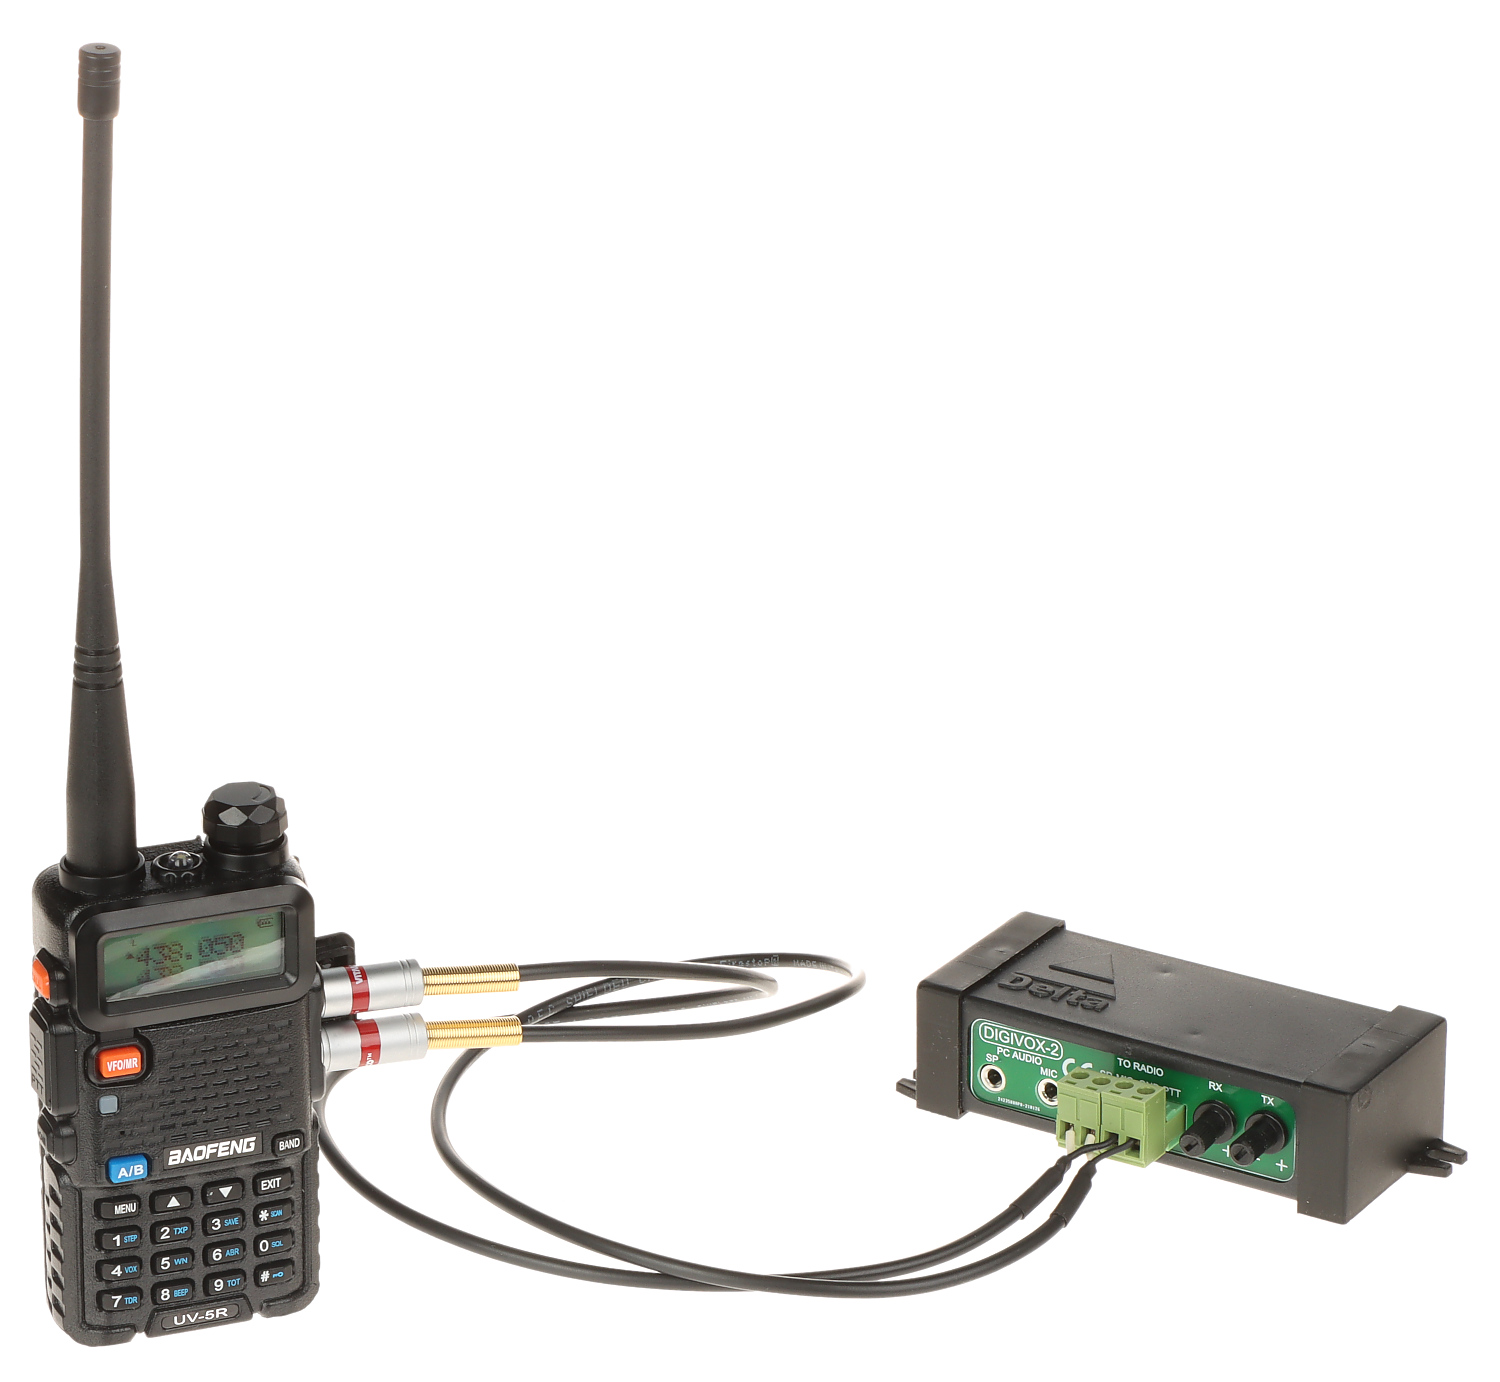 Statie radio portabila Baofeng UV-5R 5W, 136 - 174 MHz / 400-520 Mhz